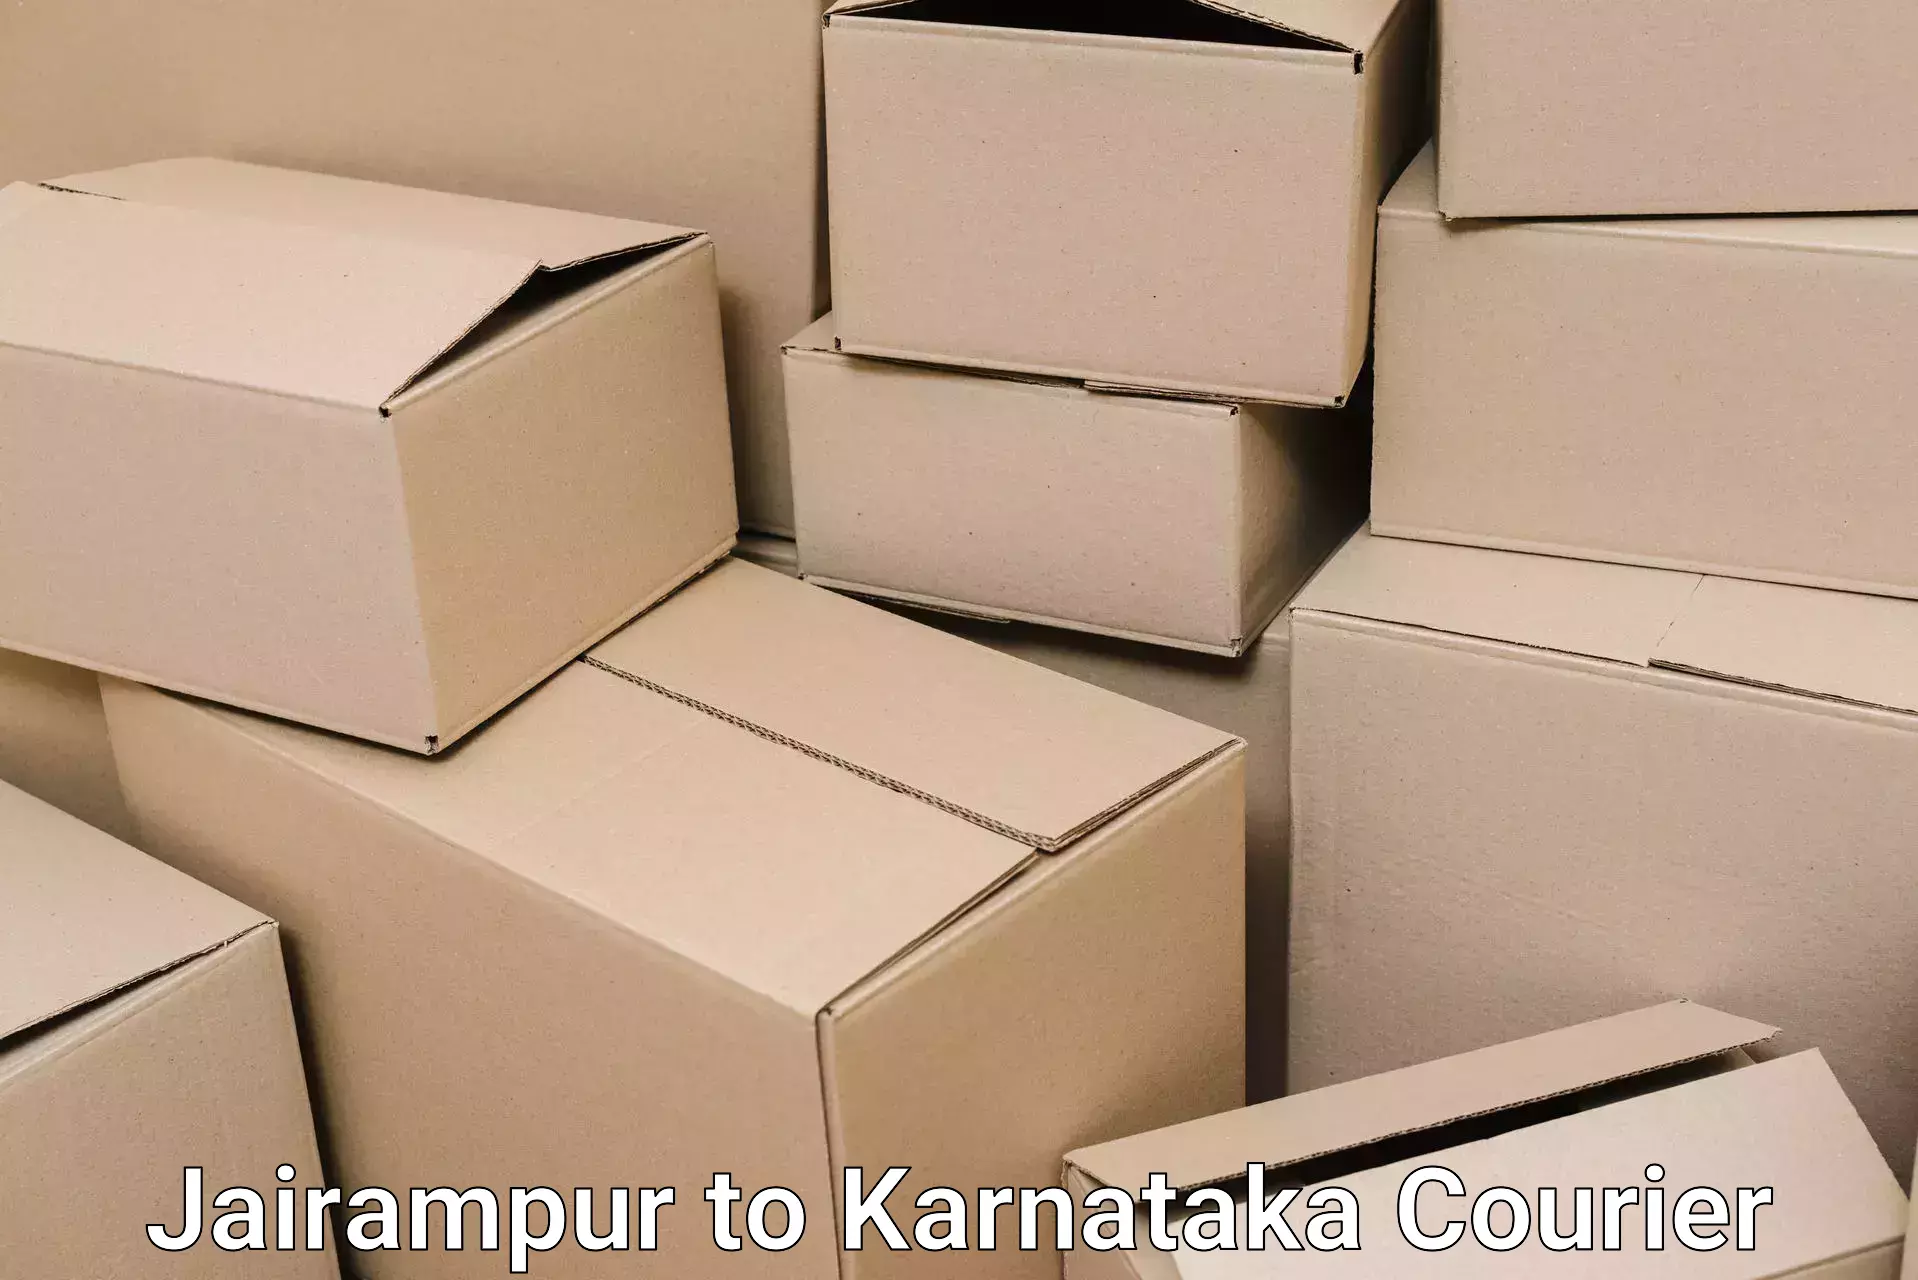 Packing and moving services Jairampur to Karwar